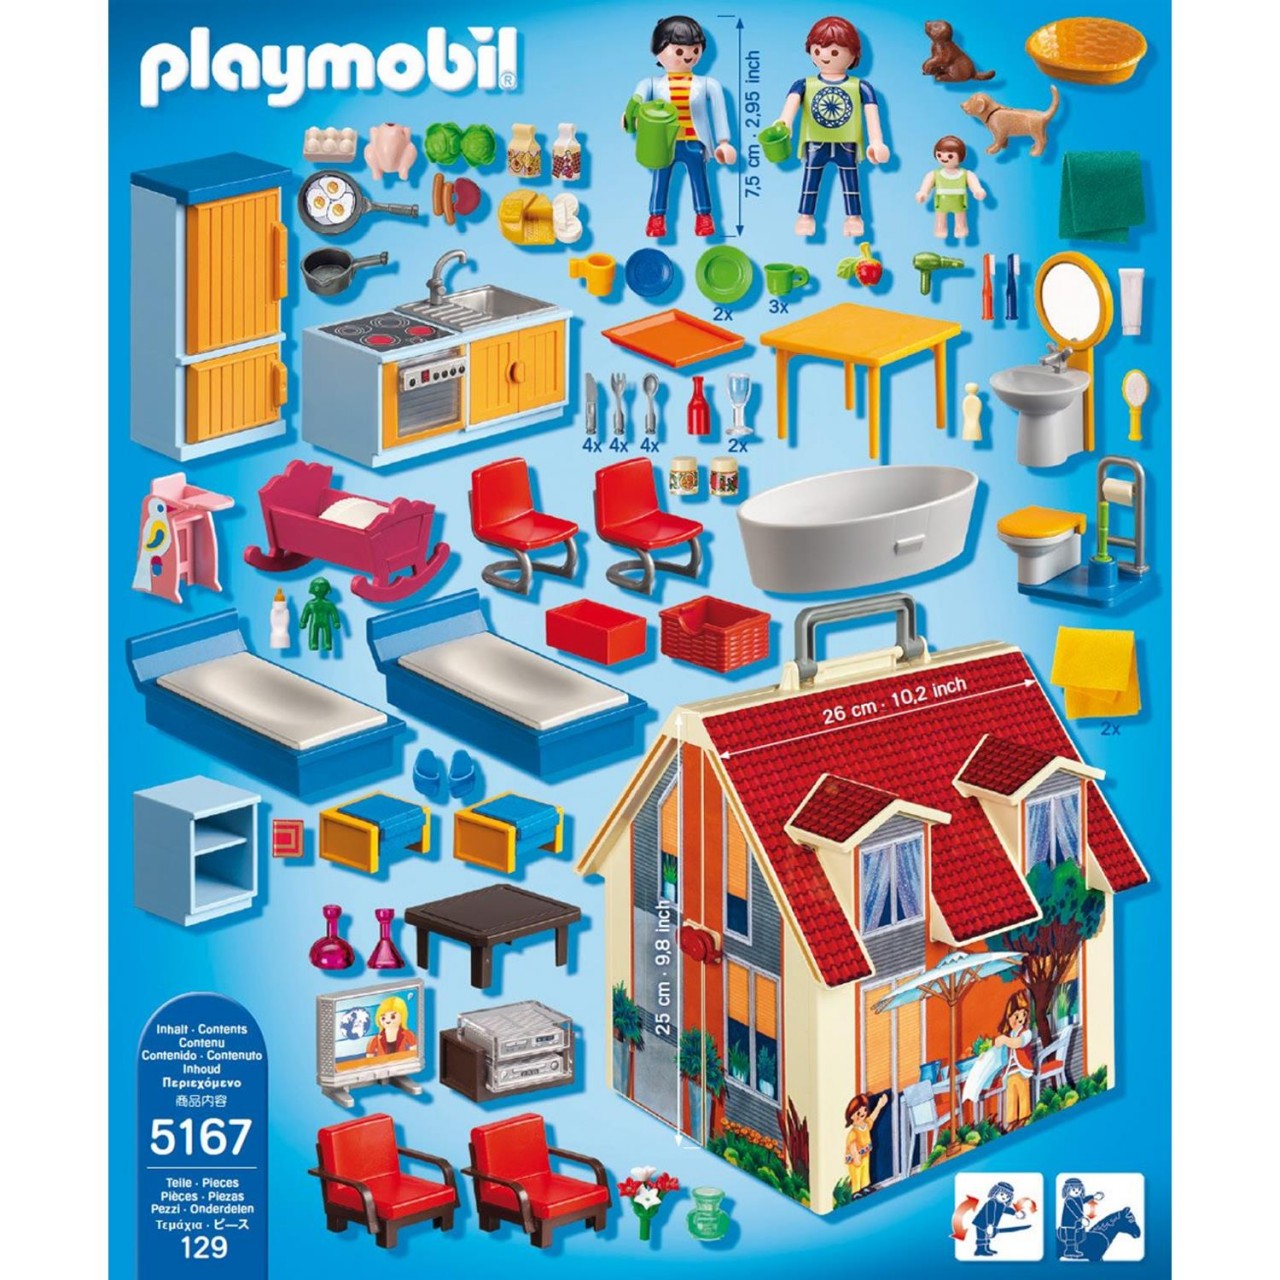 Playmobil 5167 Mein Neues Mitnehm-Puppenhaus